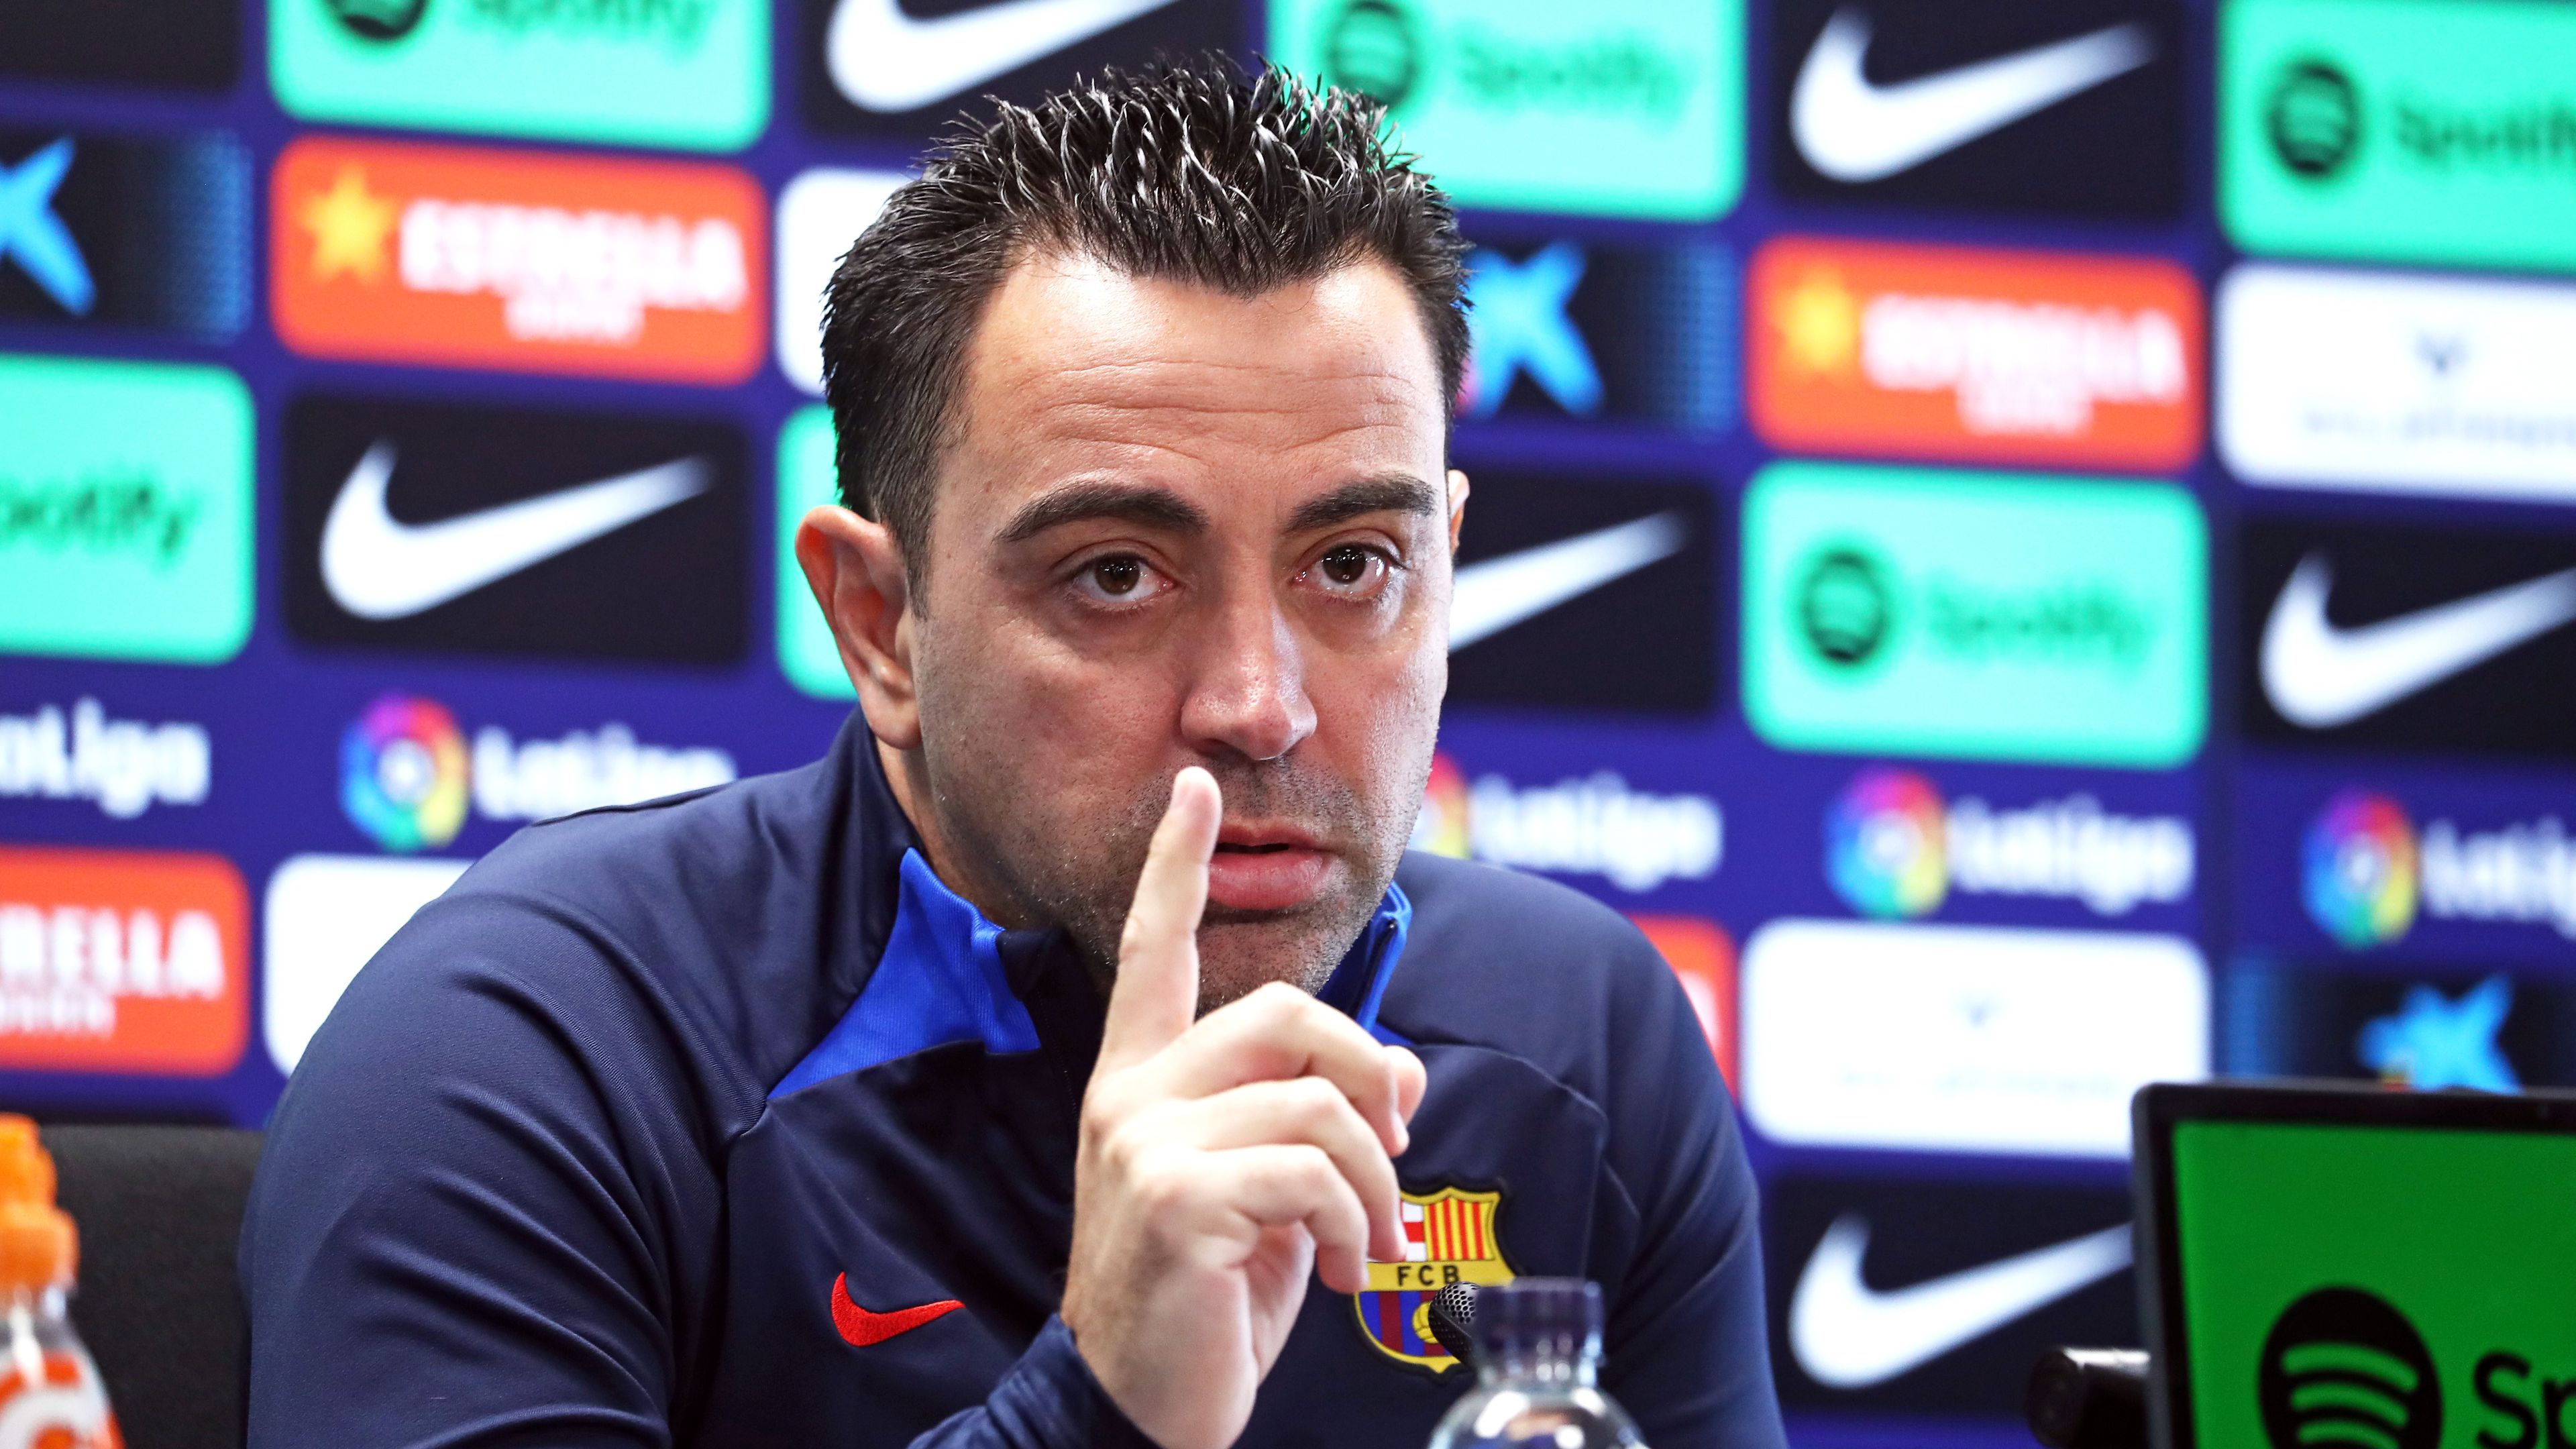 Xavinak a jó eredmény mellett az is fontos, hogy csapata irányítsa a mérkőzést (Fotó: Getty Images)